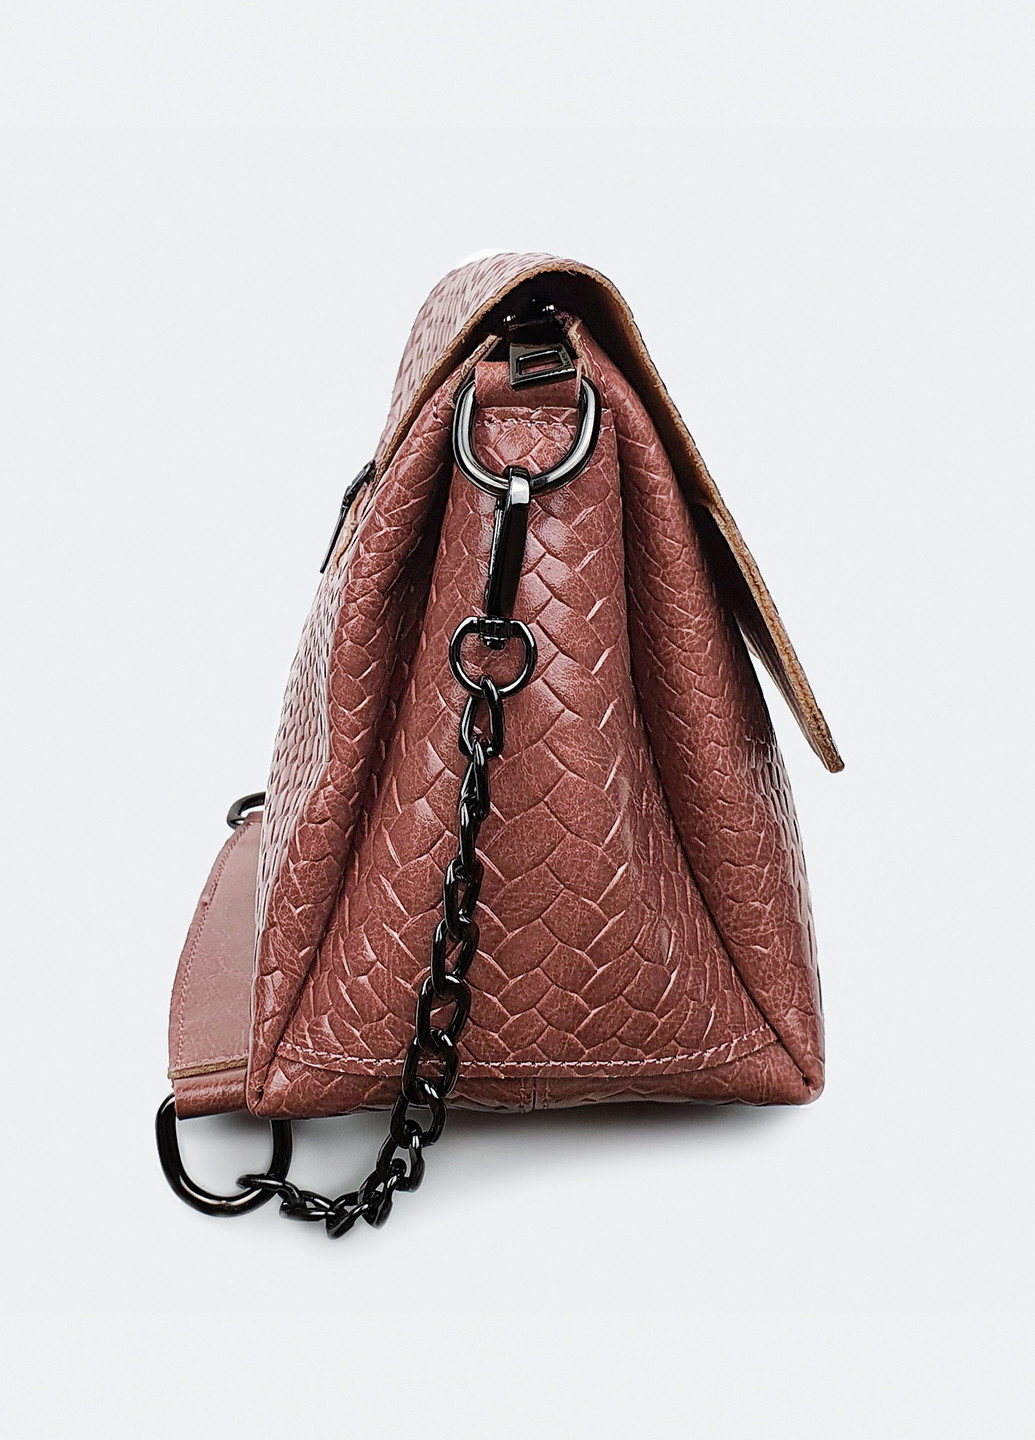 Стильная сумка кожаная кросс-боди средняя 009-1 Fashion сумка (226284954)